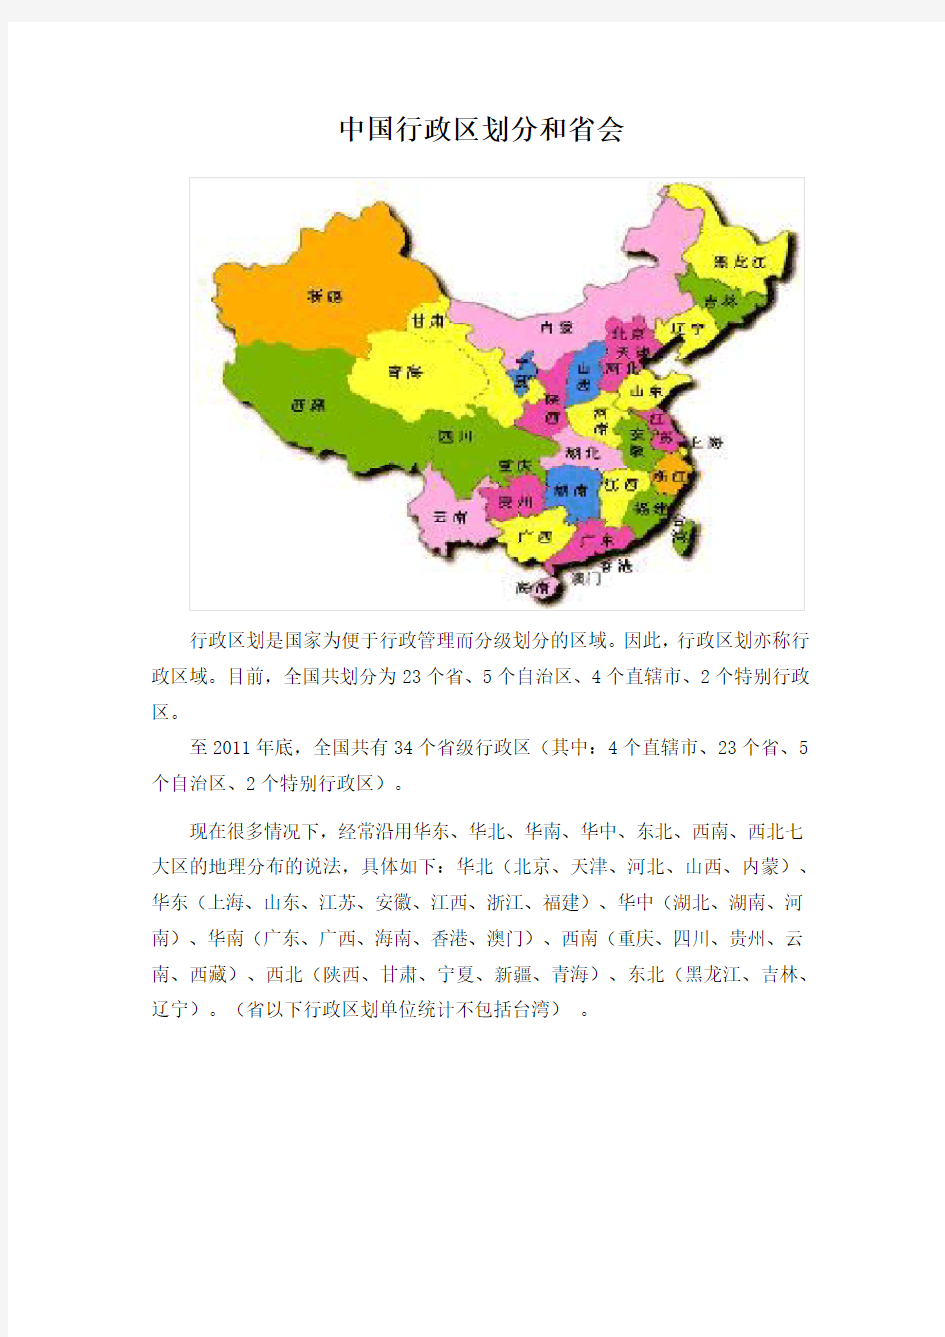 中国行政区划分和省会